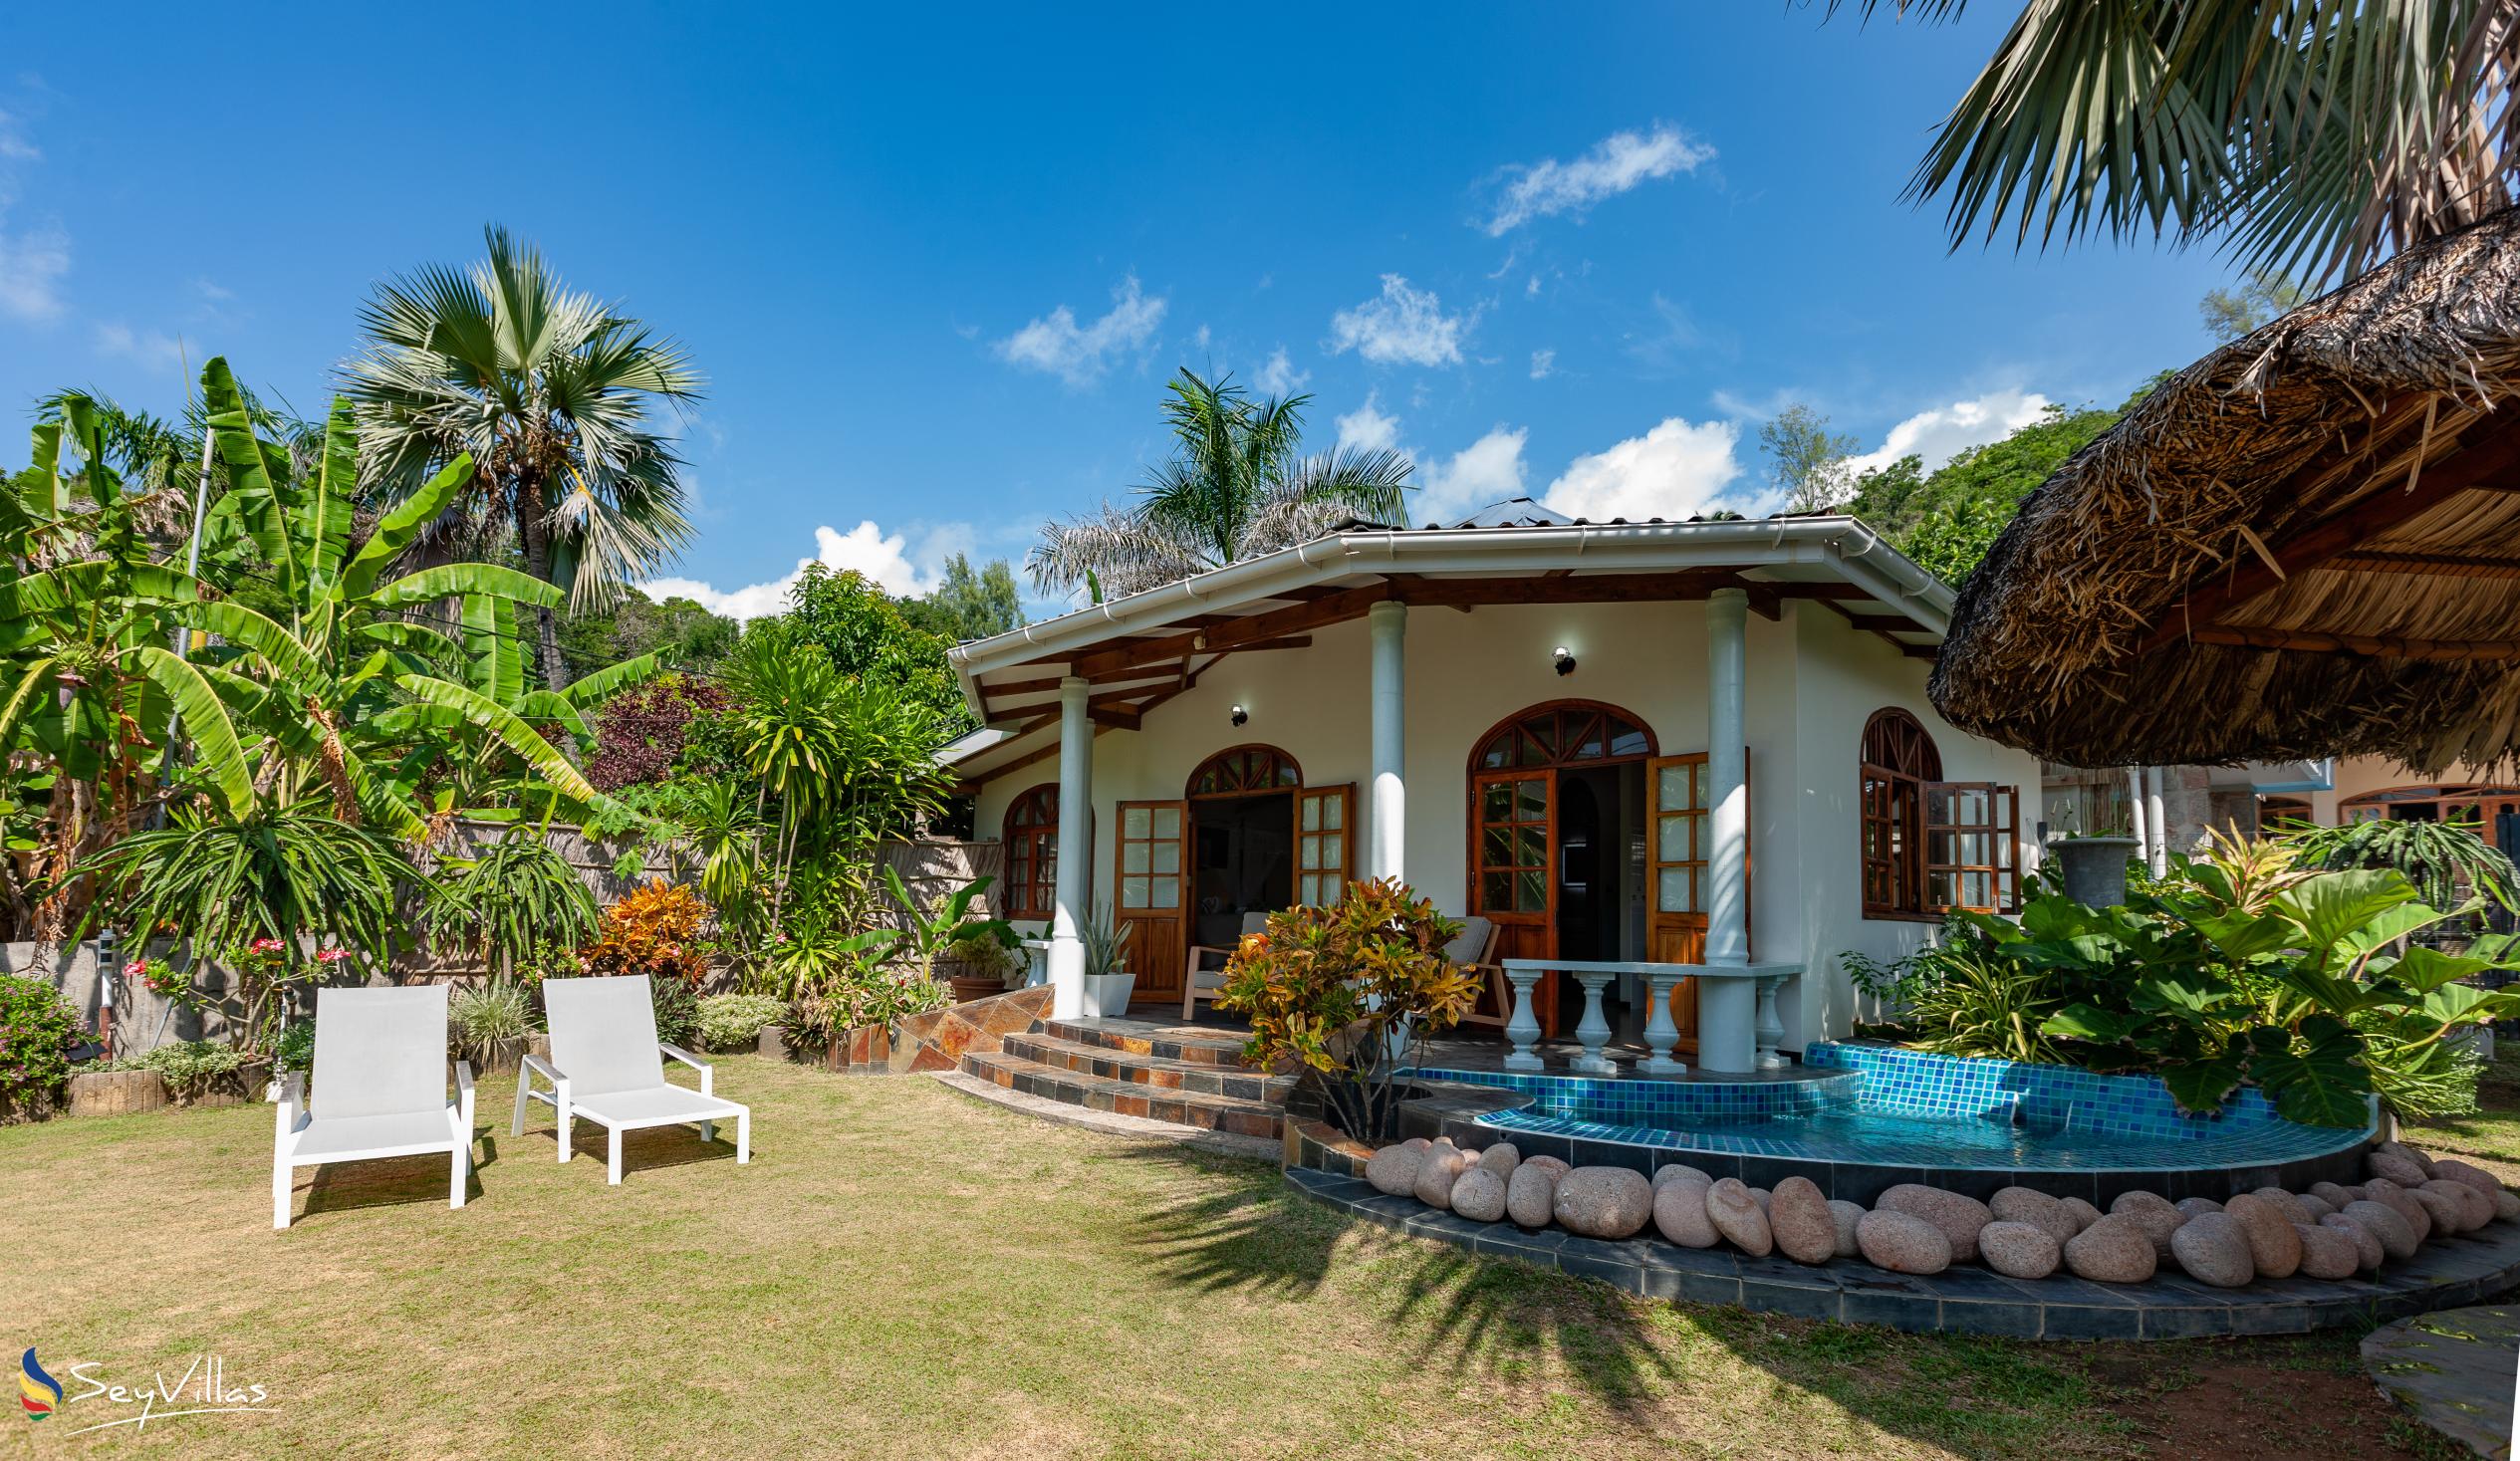 Foto 3: La Petite Maison - Aussenbereich - Praslin (Seychellen)